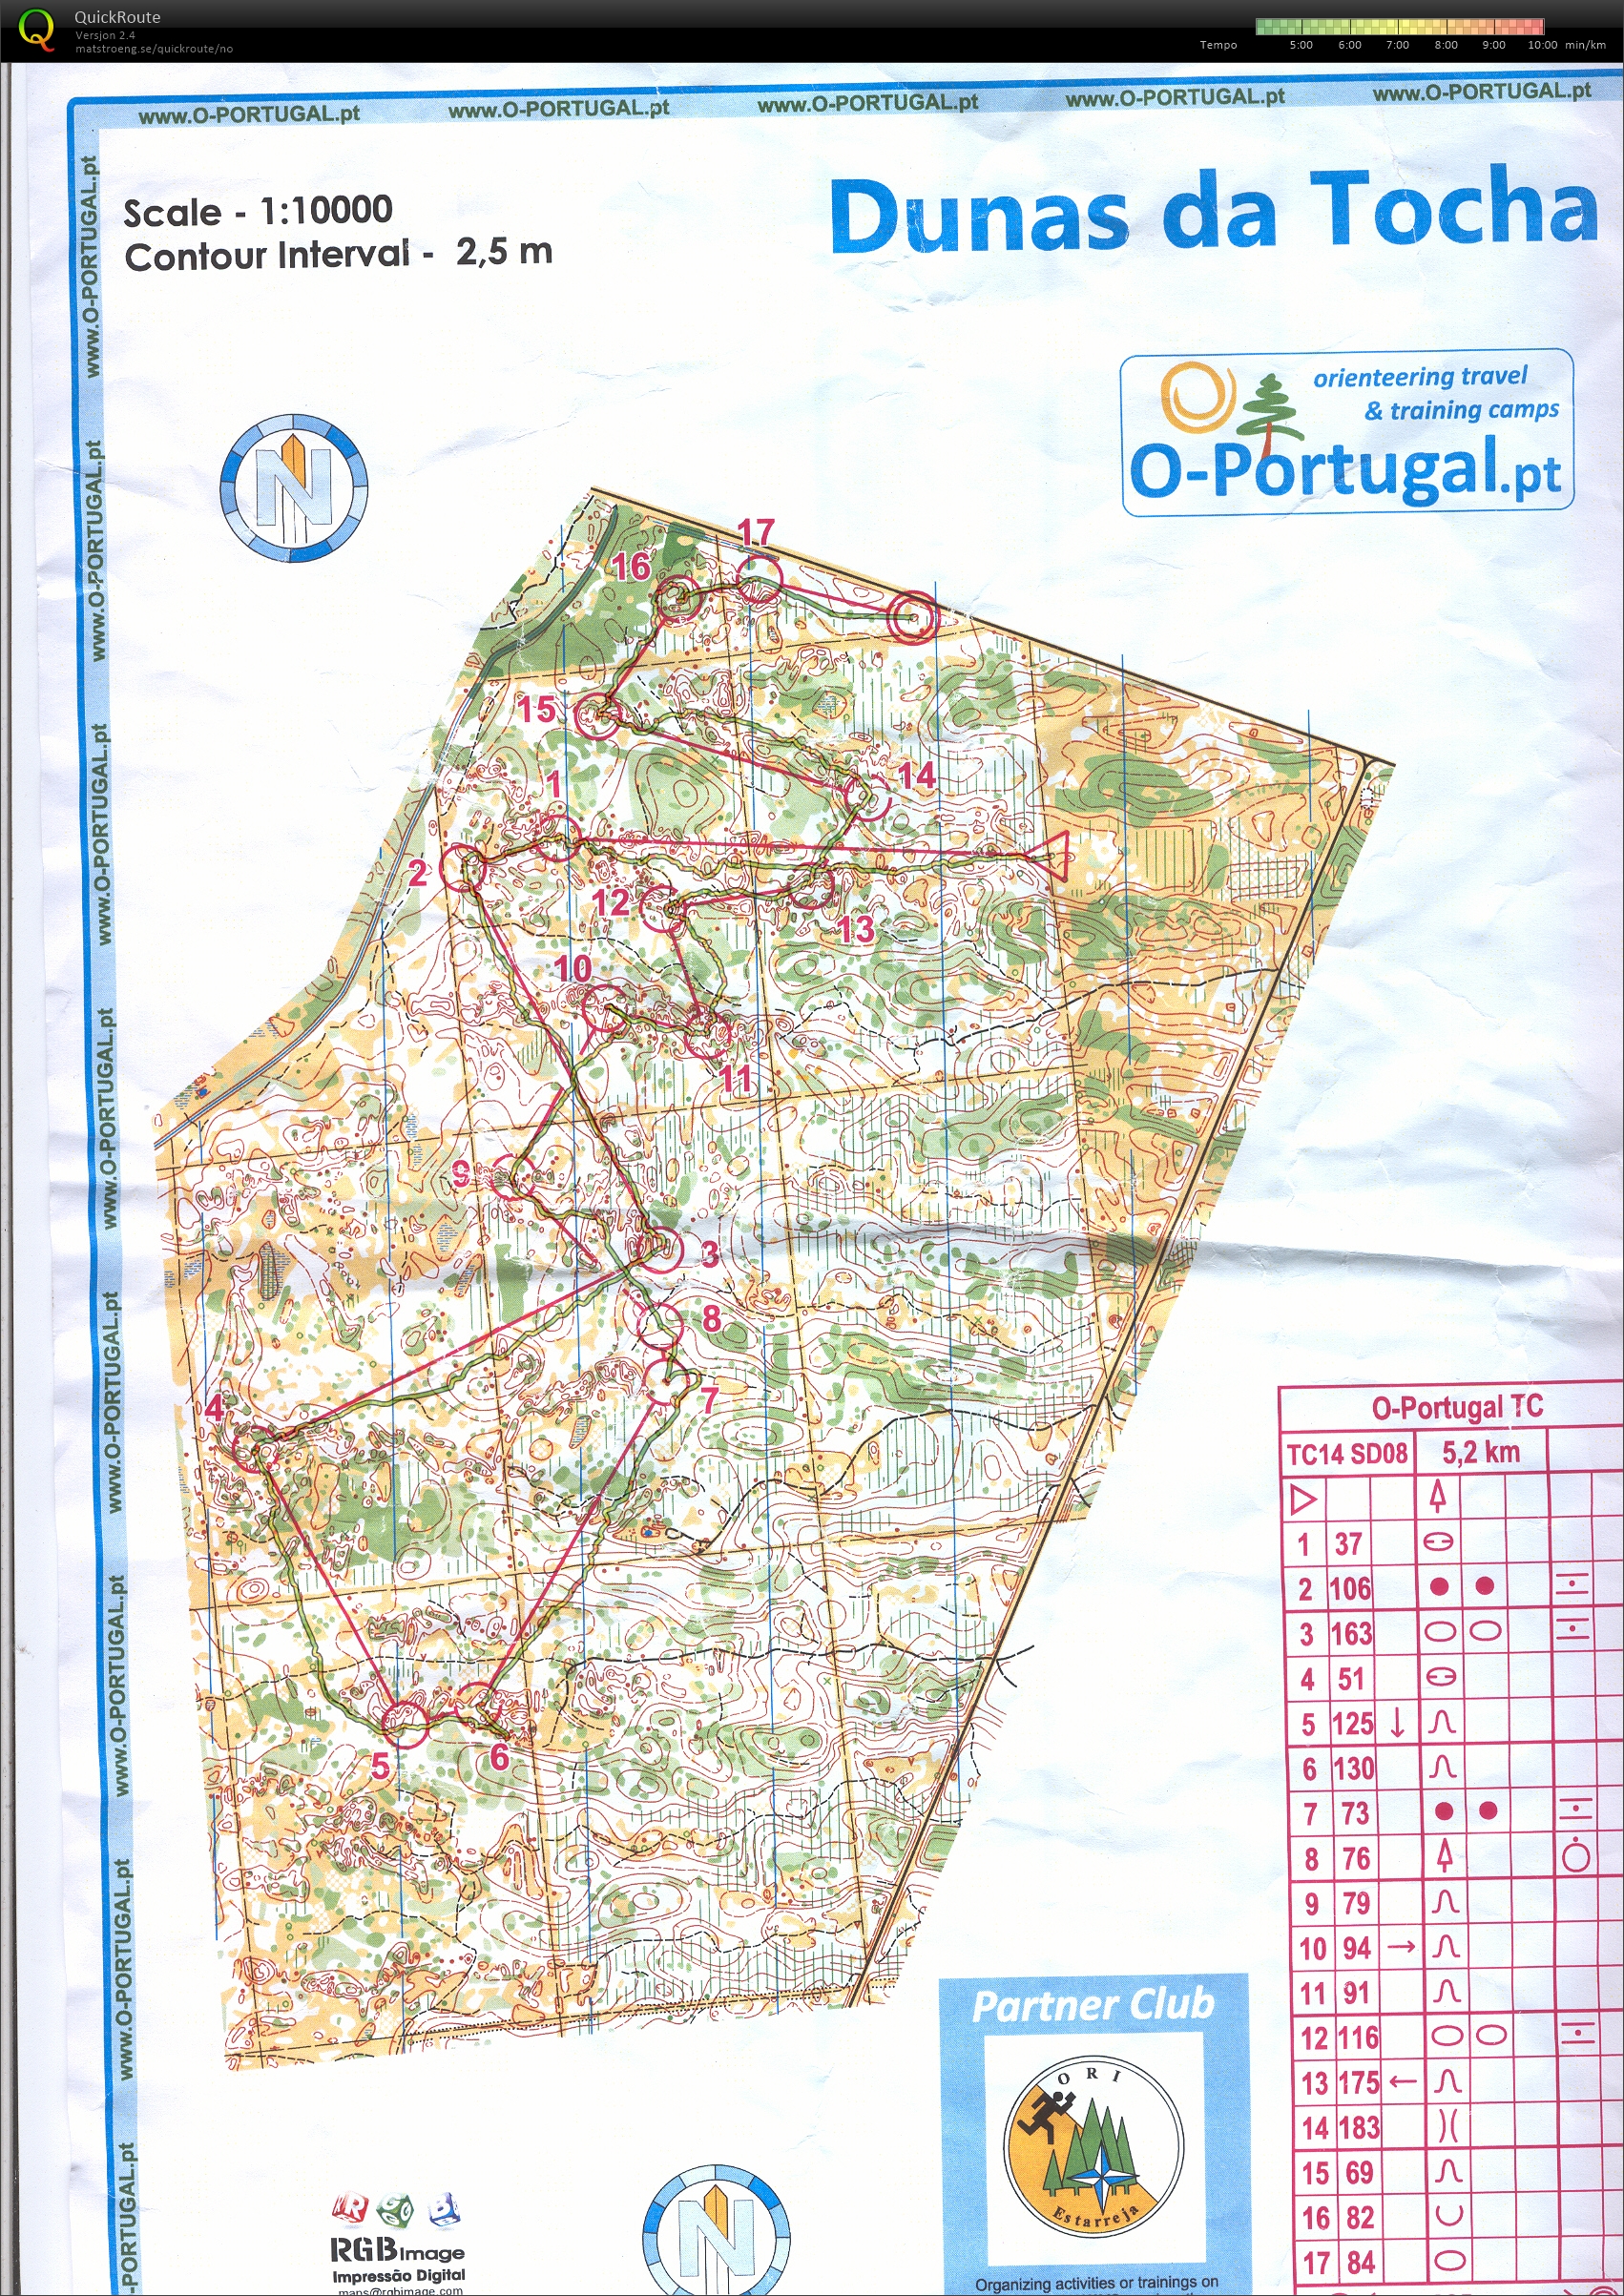 Portugal økt 6 (22-01-2014)